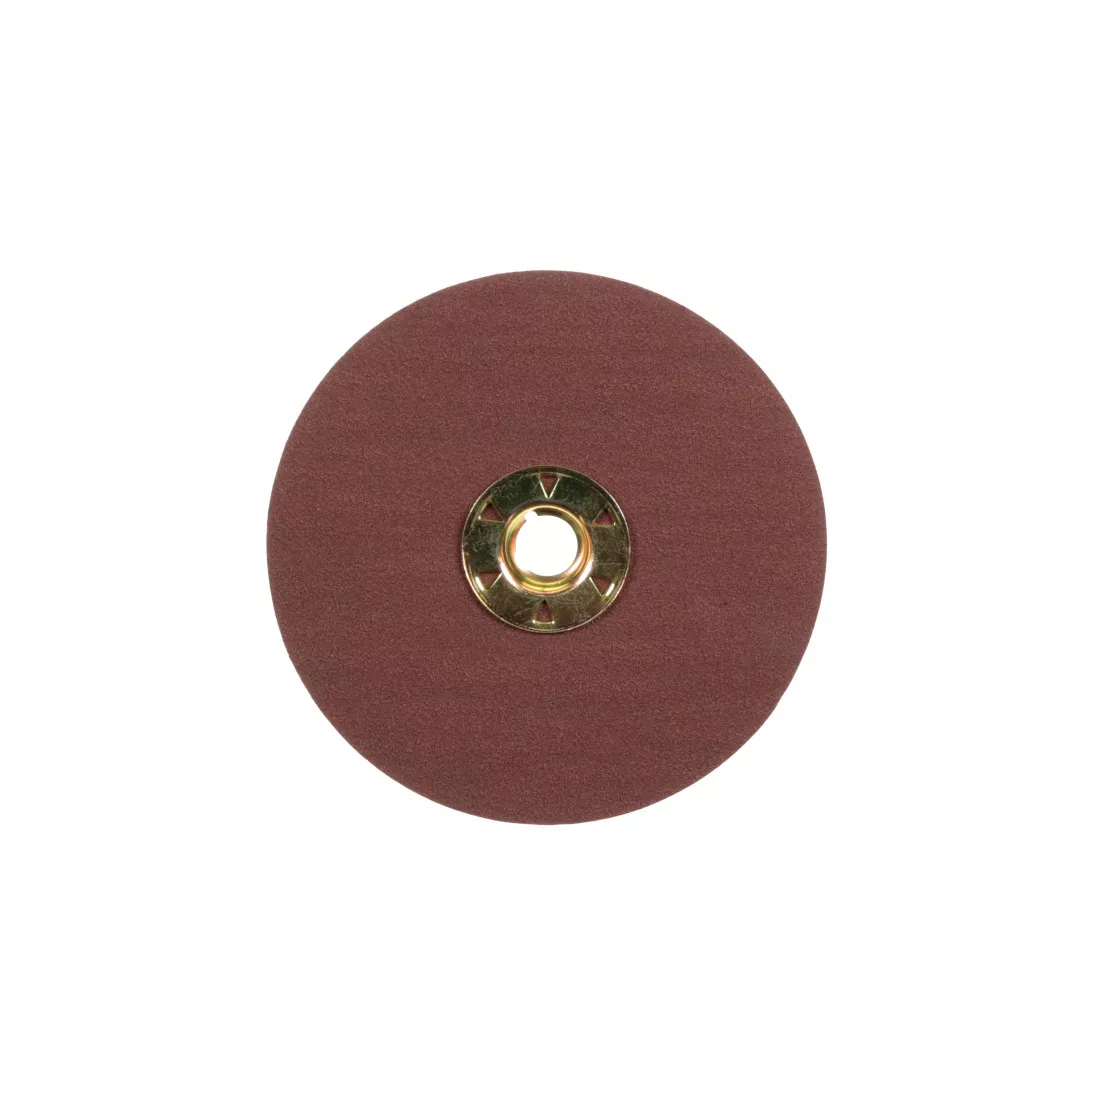 Standard Abrasives™ Quick Change Aluminum Oxide Resin Fiber Disc,
531108, 120, TSM, Brown, 5 in, Die QS500XM, 25/inner, 100/case